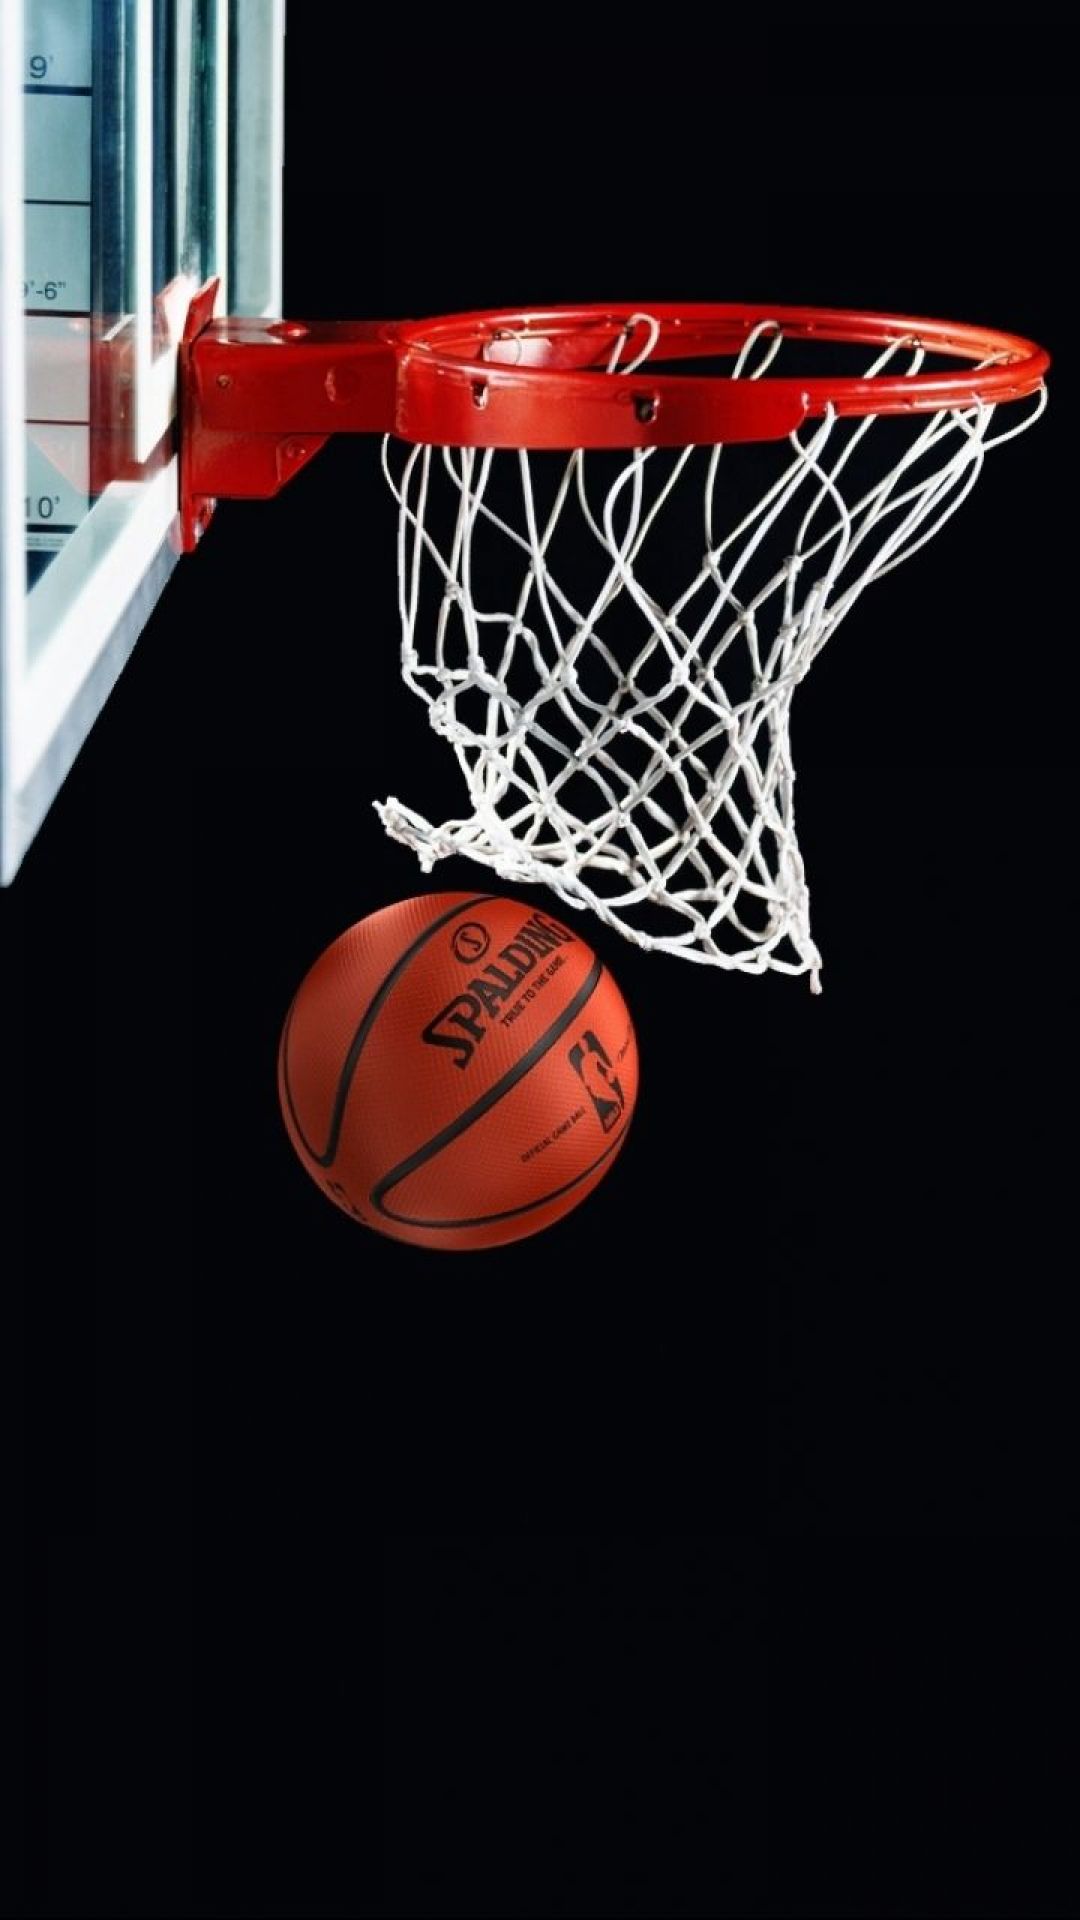 دانلود عکس توپ بسکتبال از نمای نزدیک برای پروفایل و پس زمینه